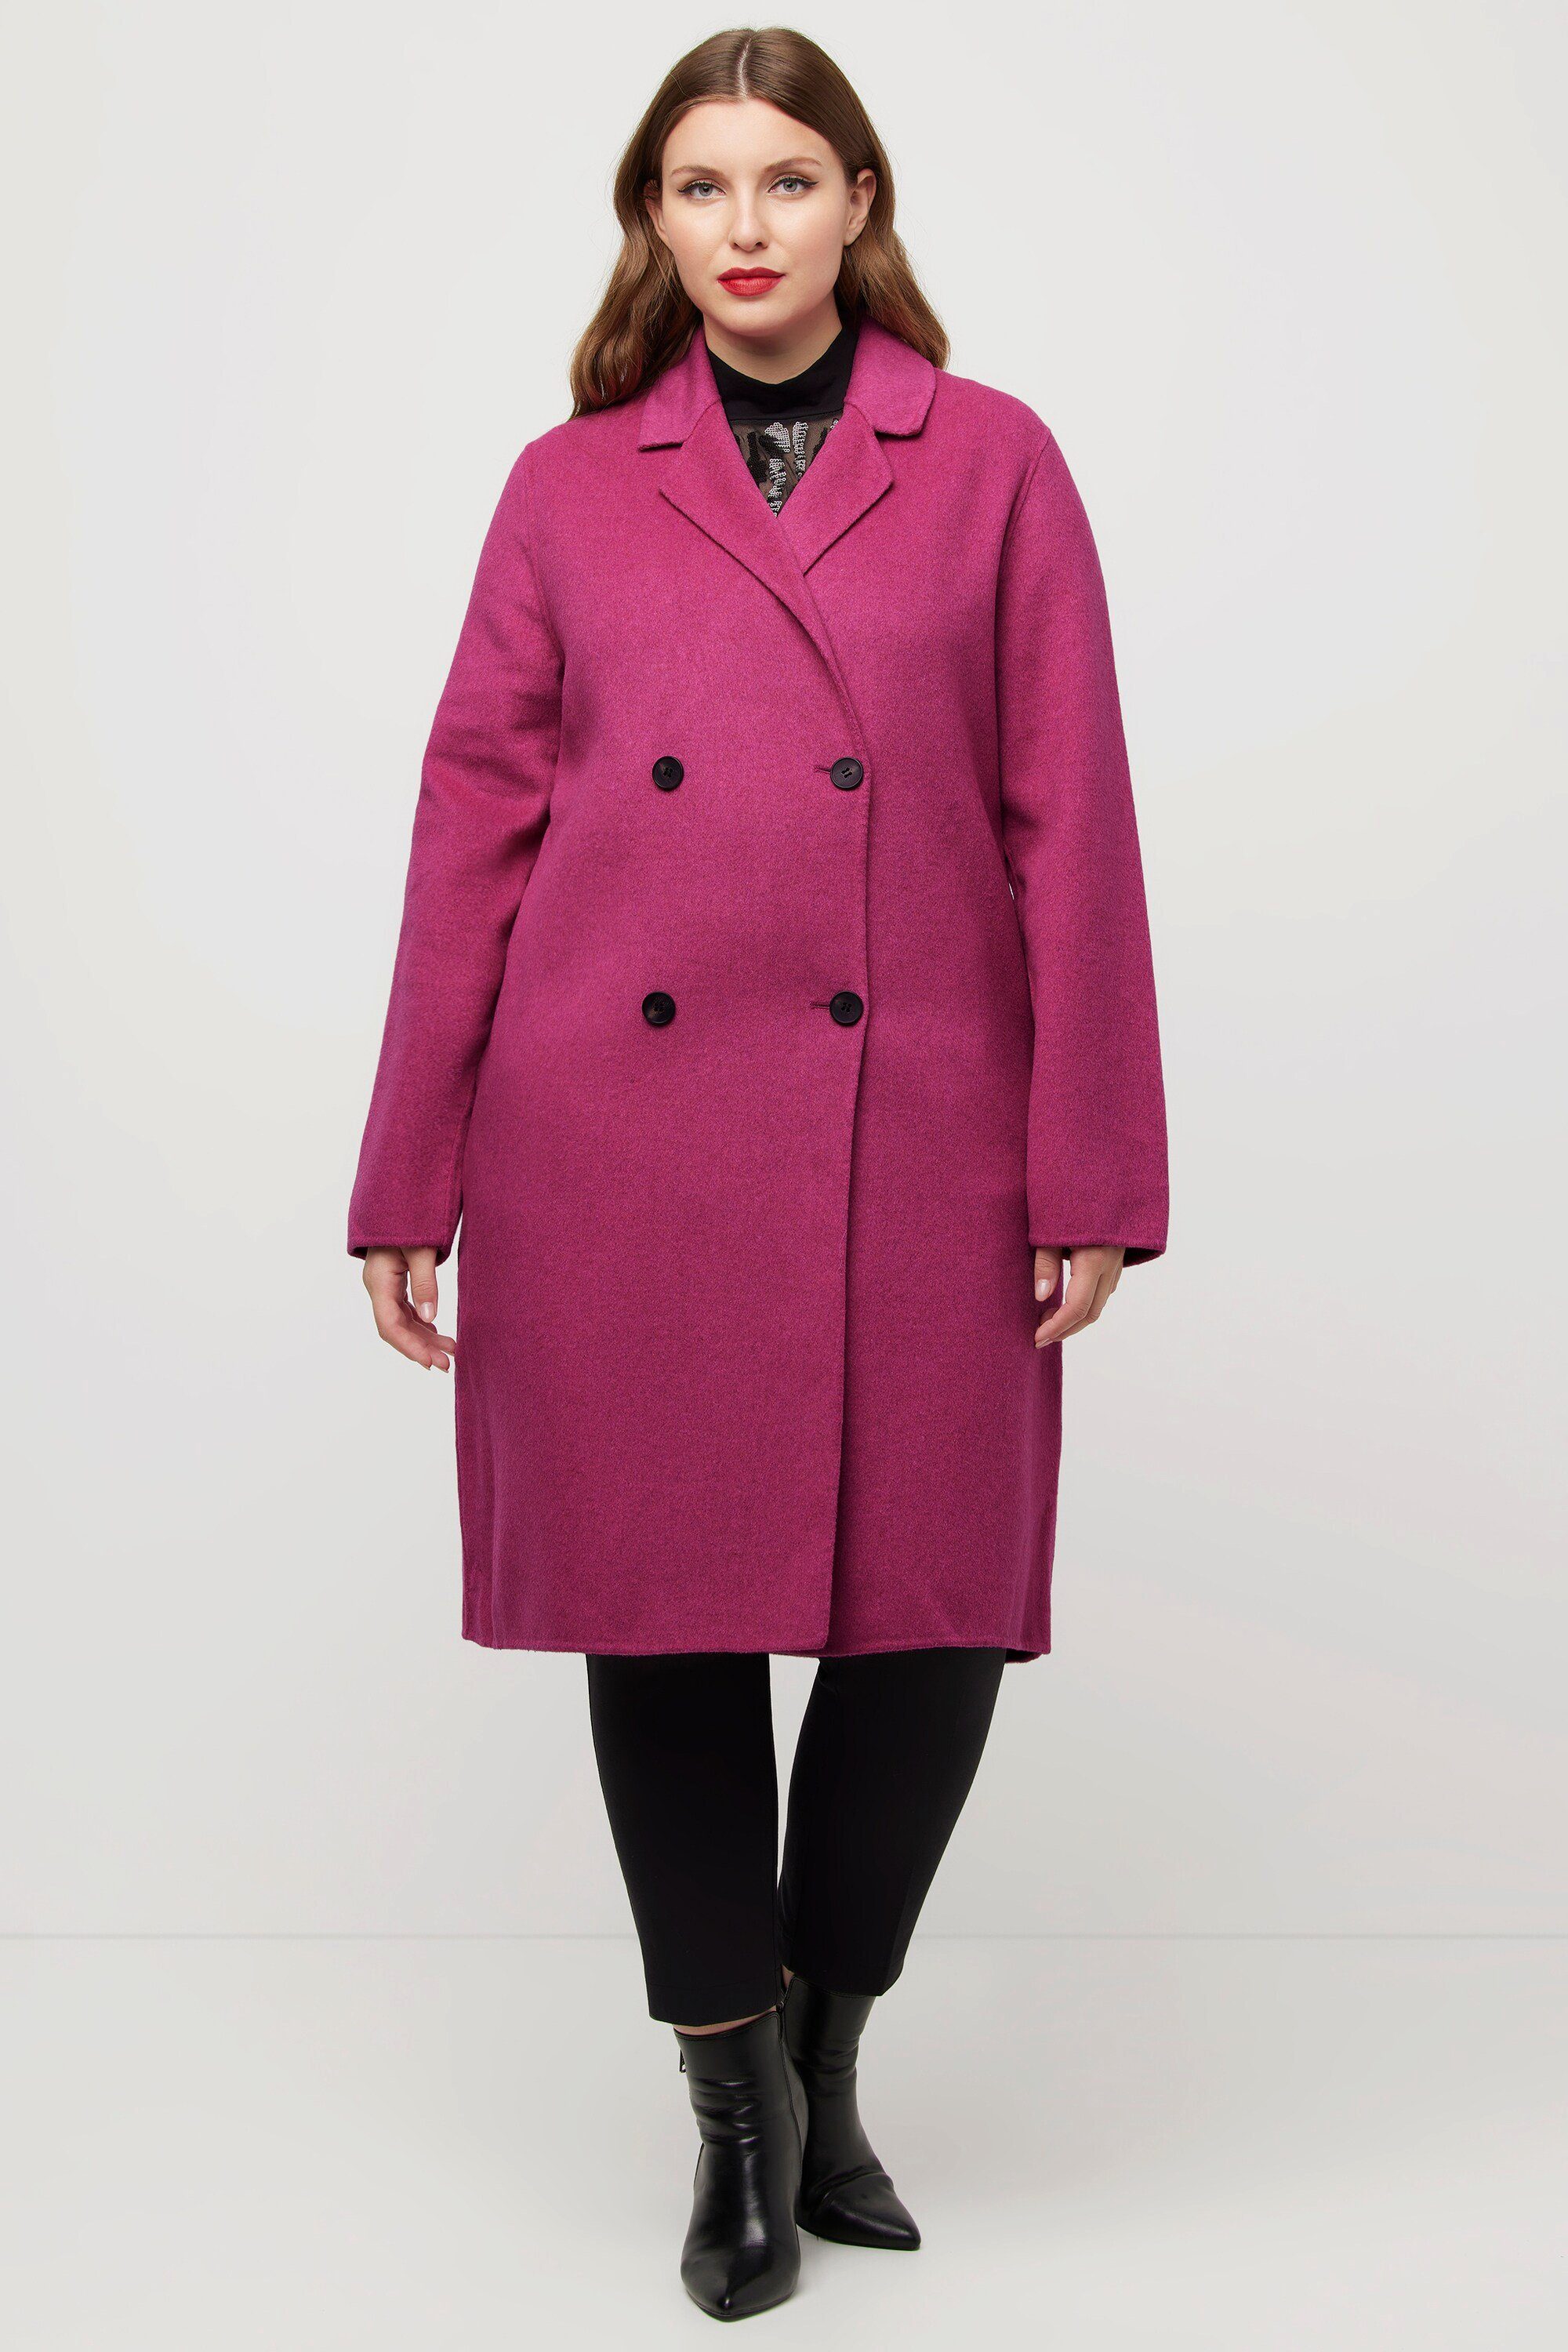 Rosa Wollmäntel für Damen kaufen » Pinke Wollmäntel | OTTO